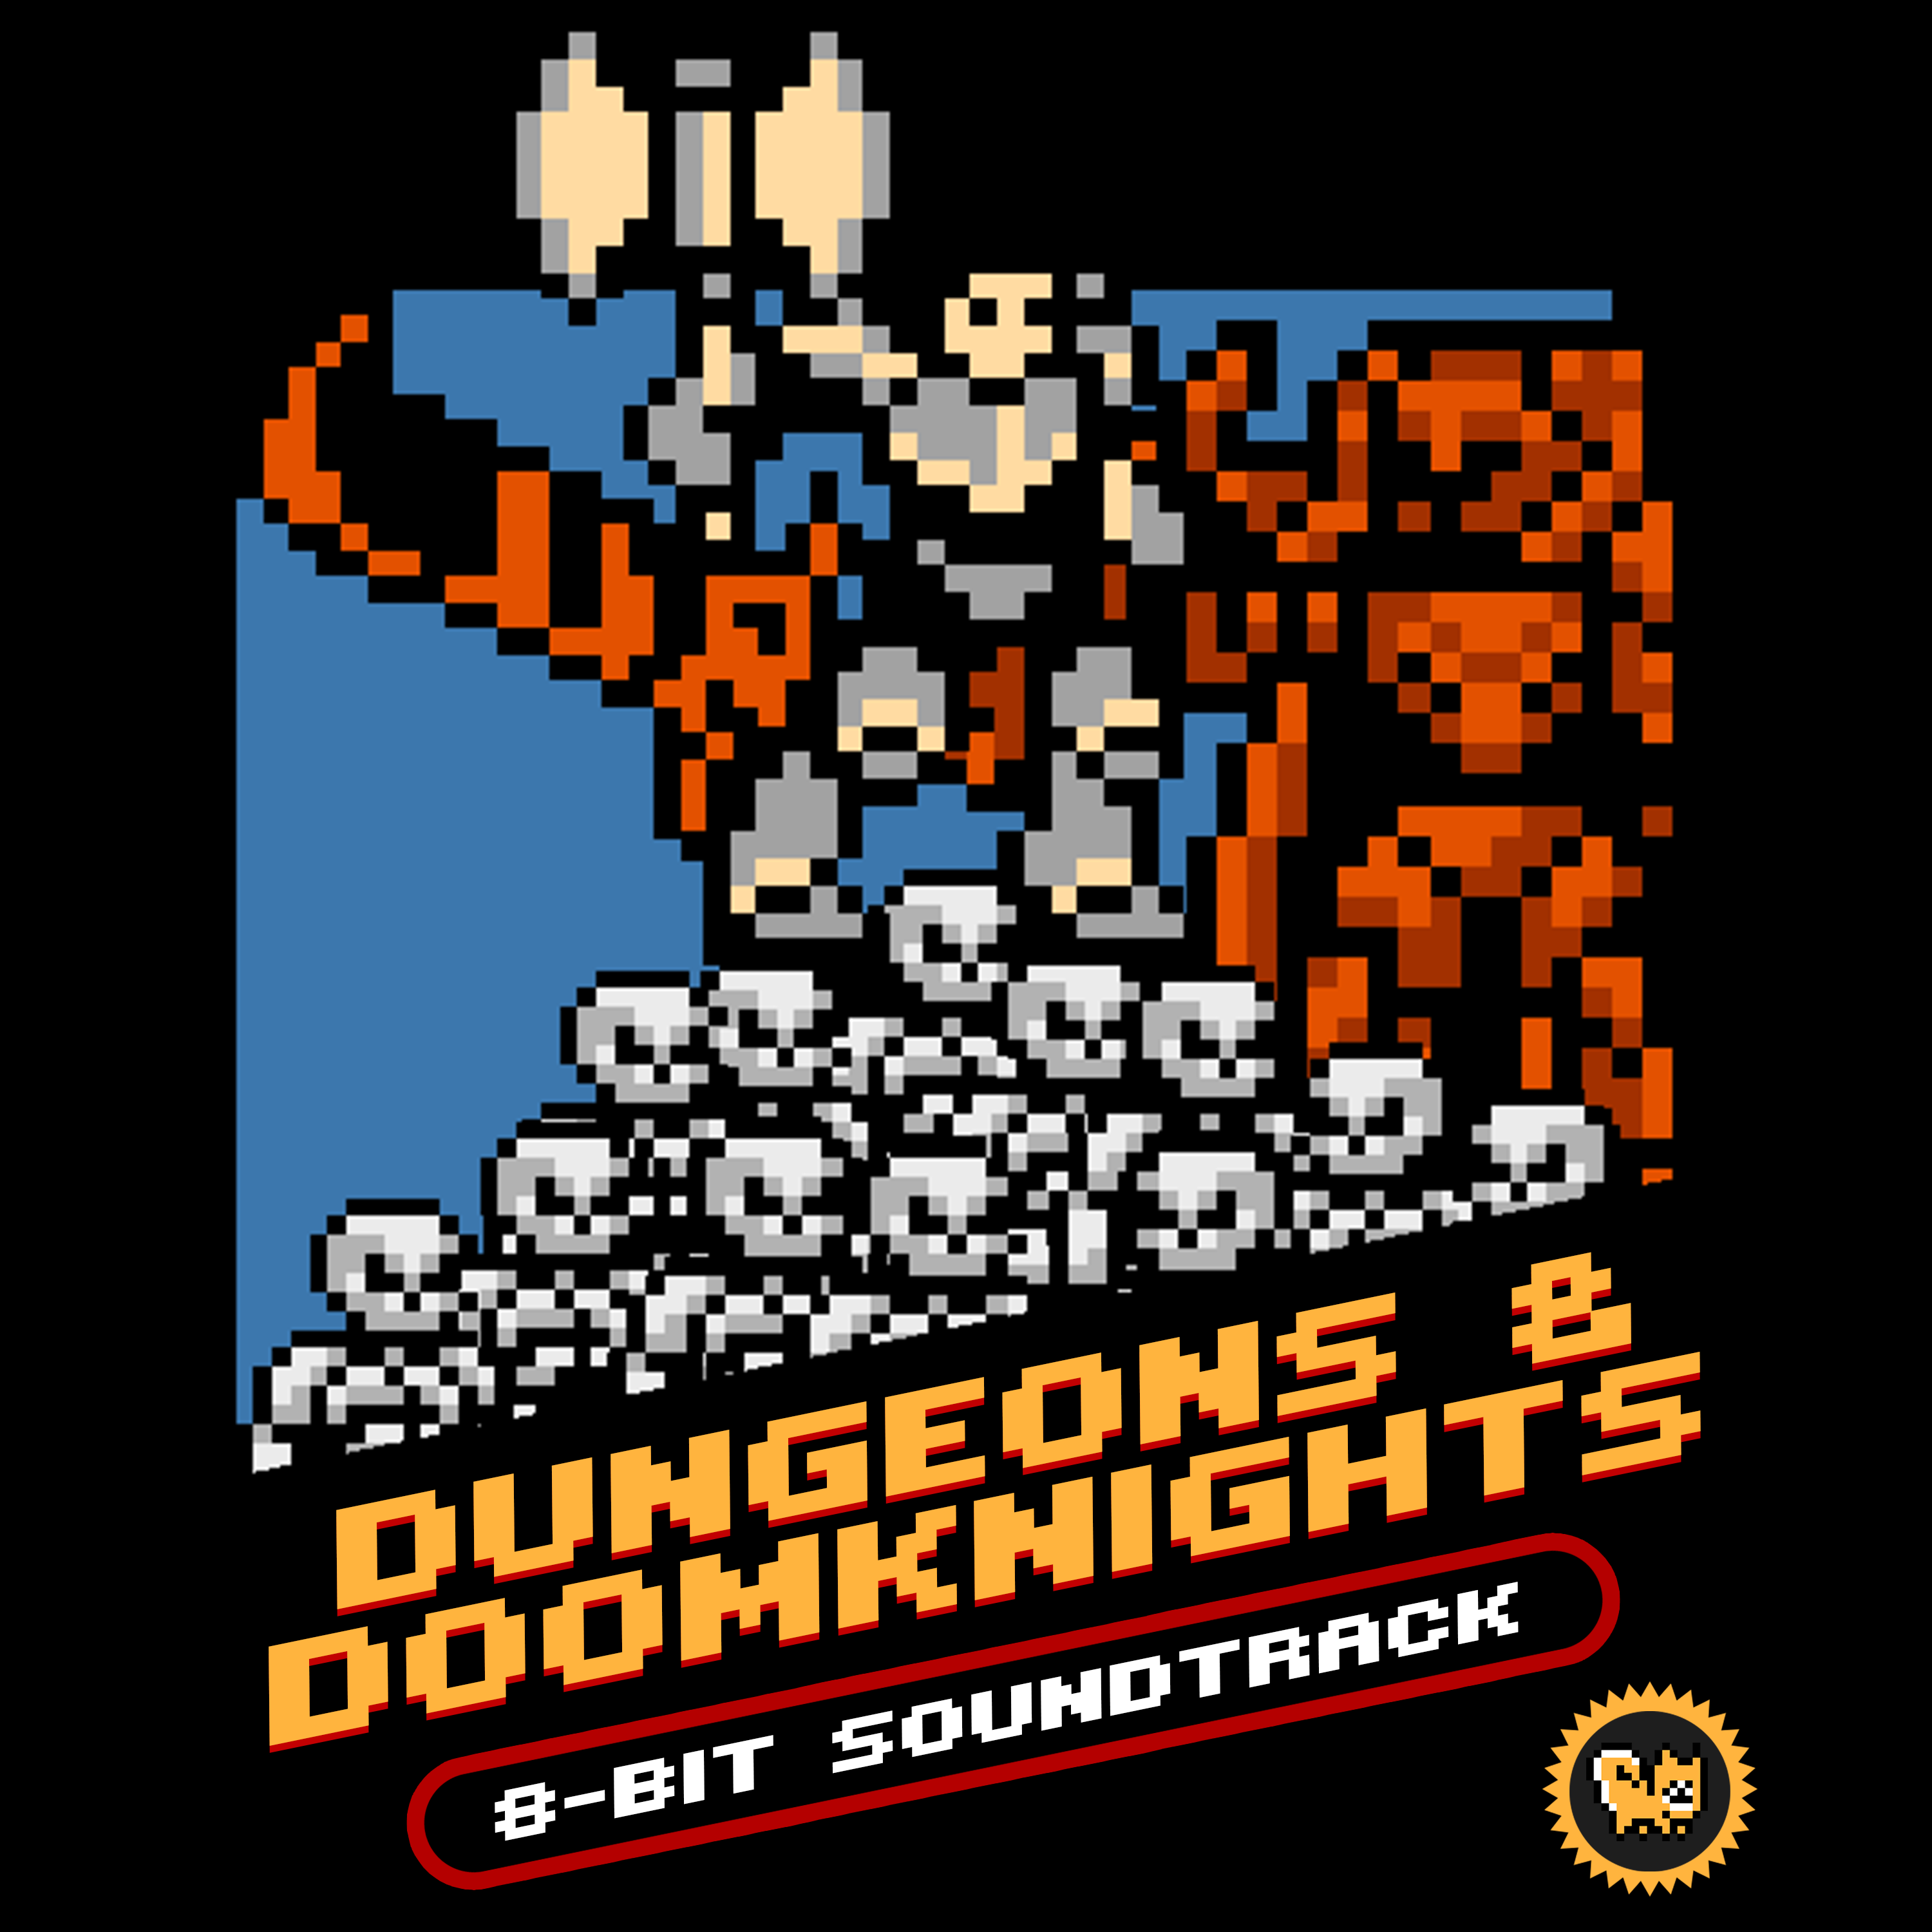 Dungeons & DoomKnights (Original 8-Bit Video Game Soundtrack)